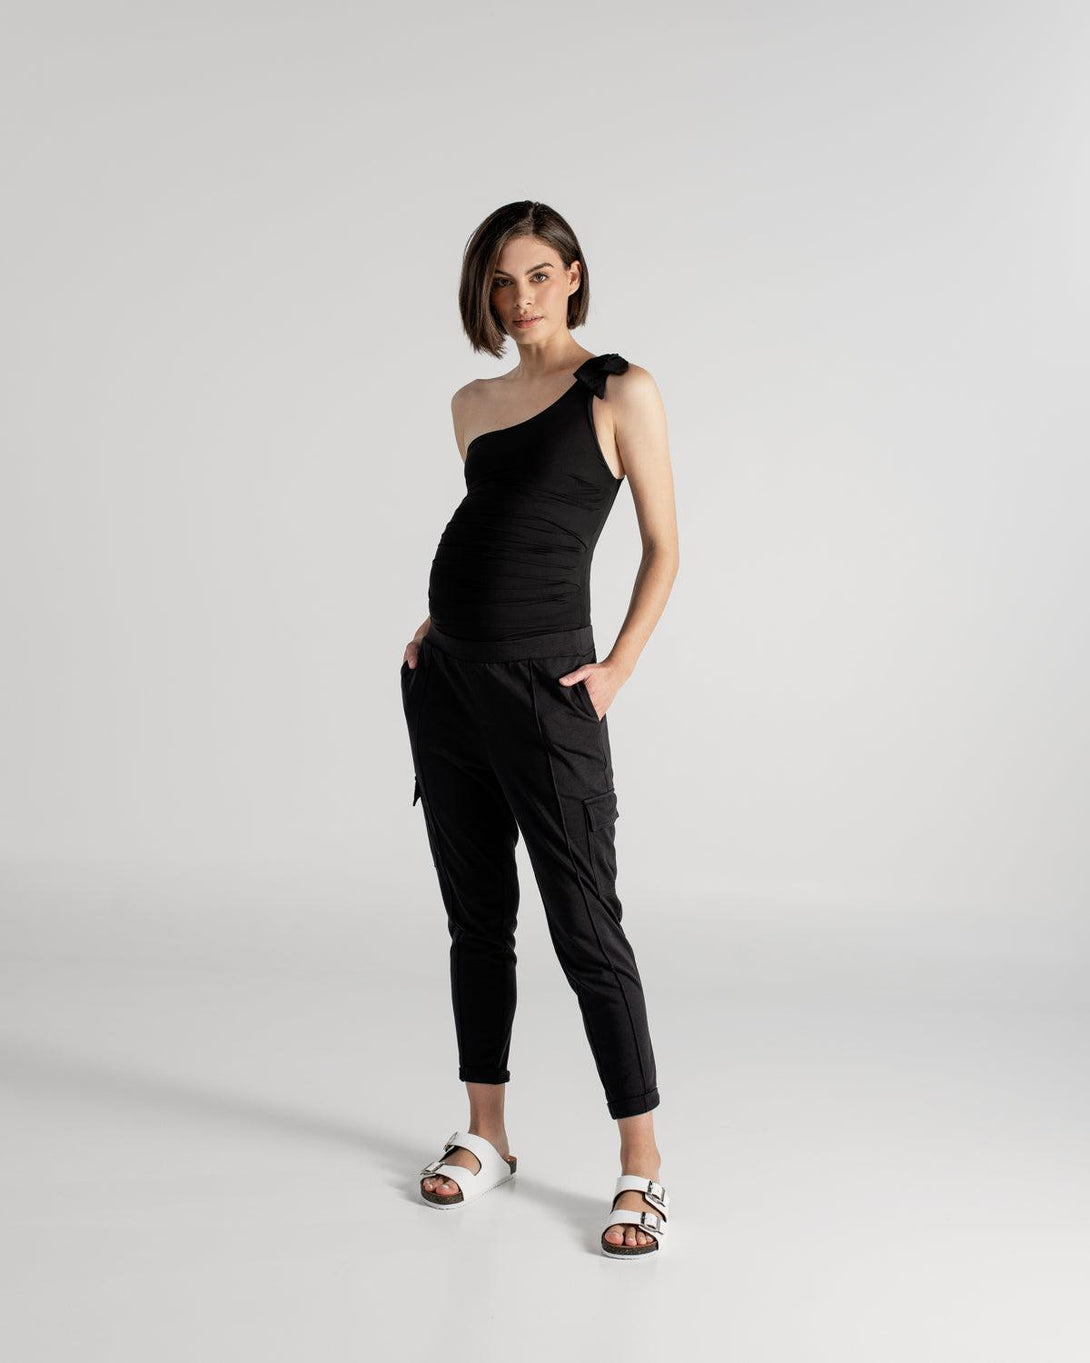 Pantalón maternidad negro tipo sudadera con elastico en la cintura para usar estando o no en embarazo.